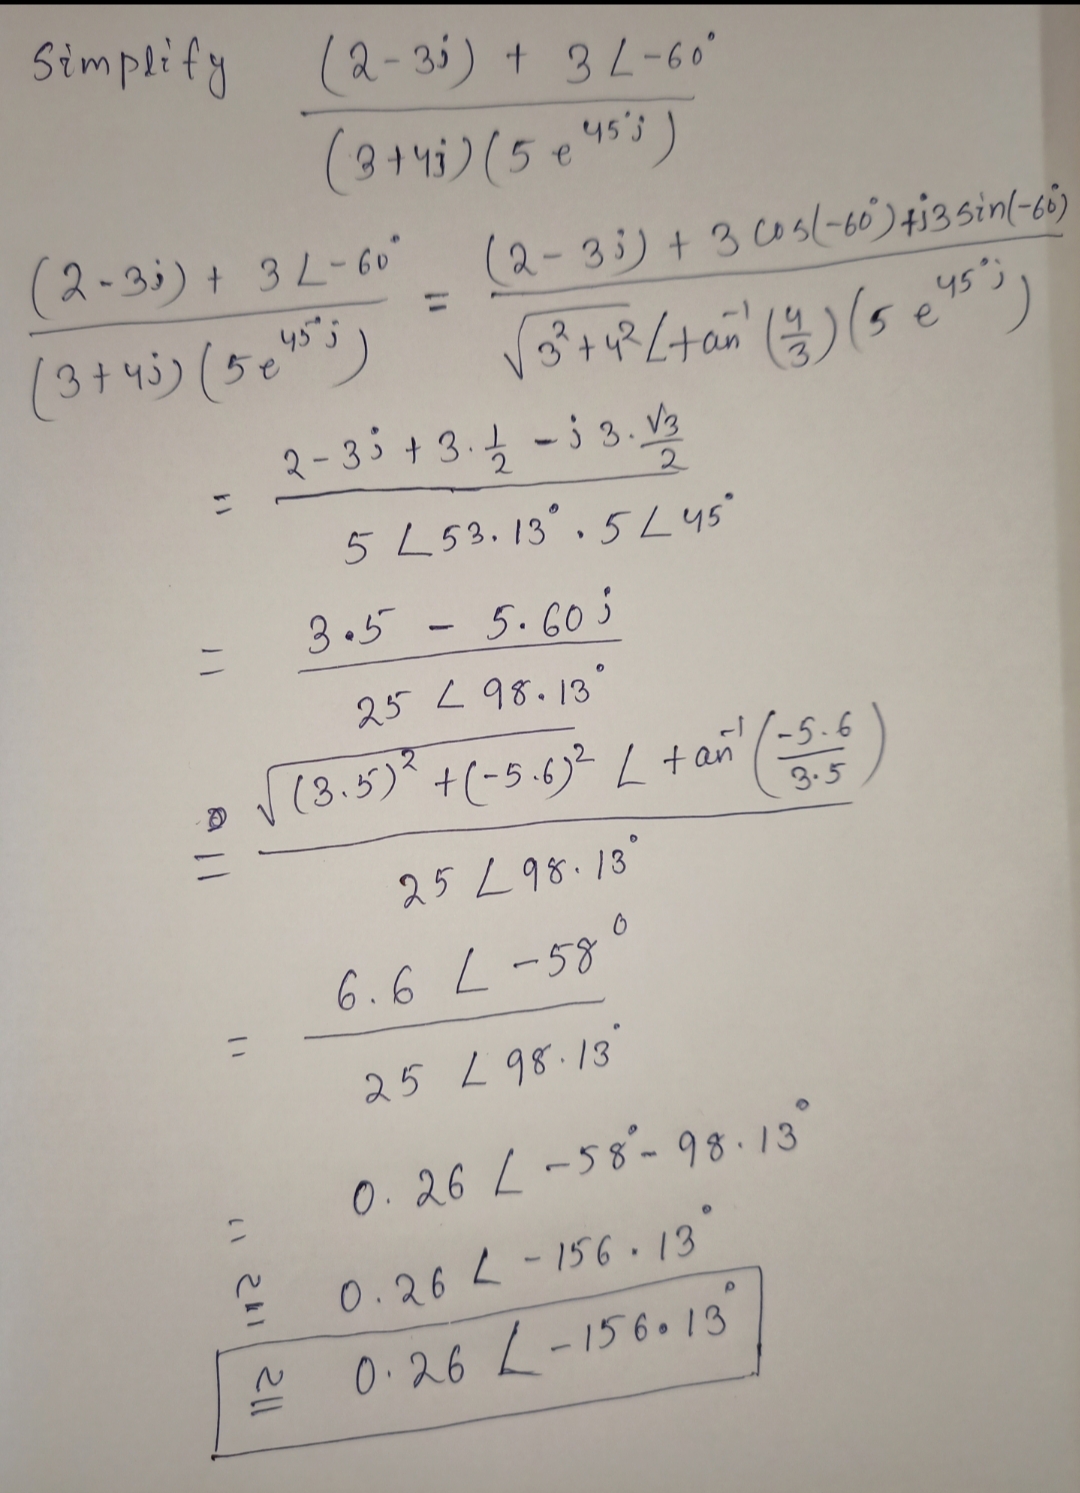 Simplify
(2-3i) + 3L-6
45's
(2-3;) + 3L-60°
(2-35) + 305(-60)4i3sin(-ci)
(3+4)(50")
2-35 + 3.4 -; 3. V3
5 L53.13,5L45
3.5 - 5.605
25 <98.13
» (3.5) ()
+(-5.6)? L+an
3.5
25 L98.13
6.6 L-58
25 L 98.13
0.26 L-58-98.13
0.26 L-15613
A 0.26 L-156013
